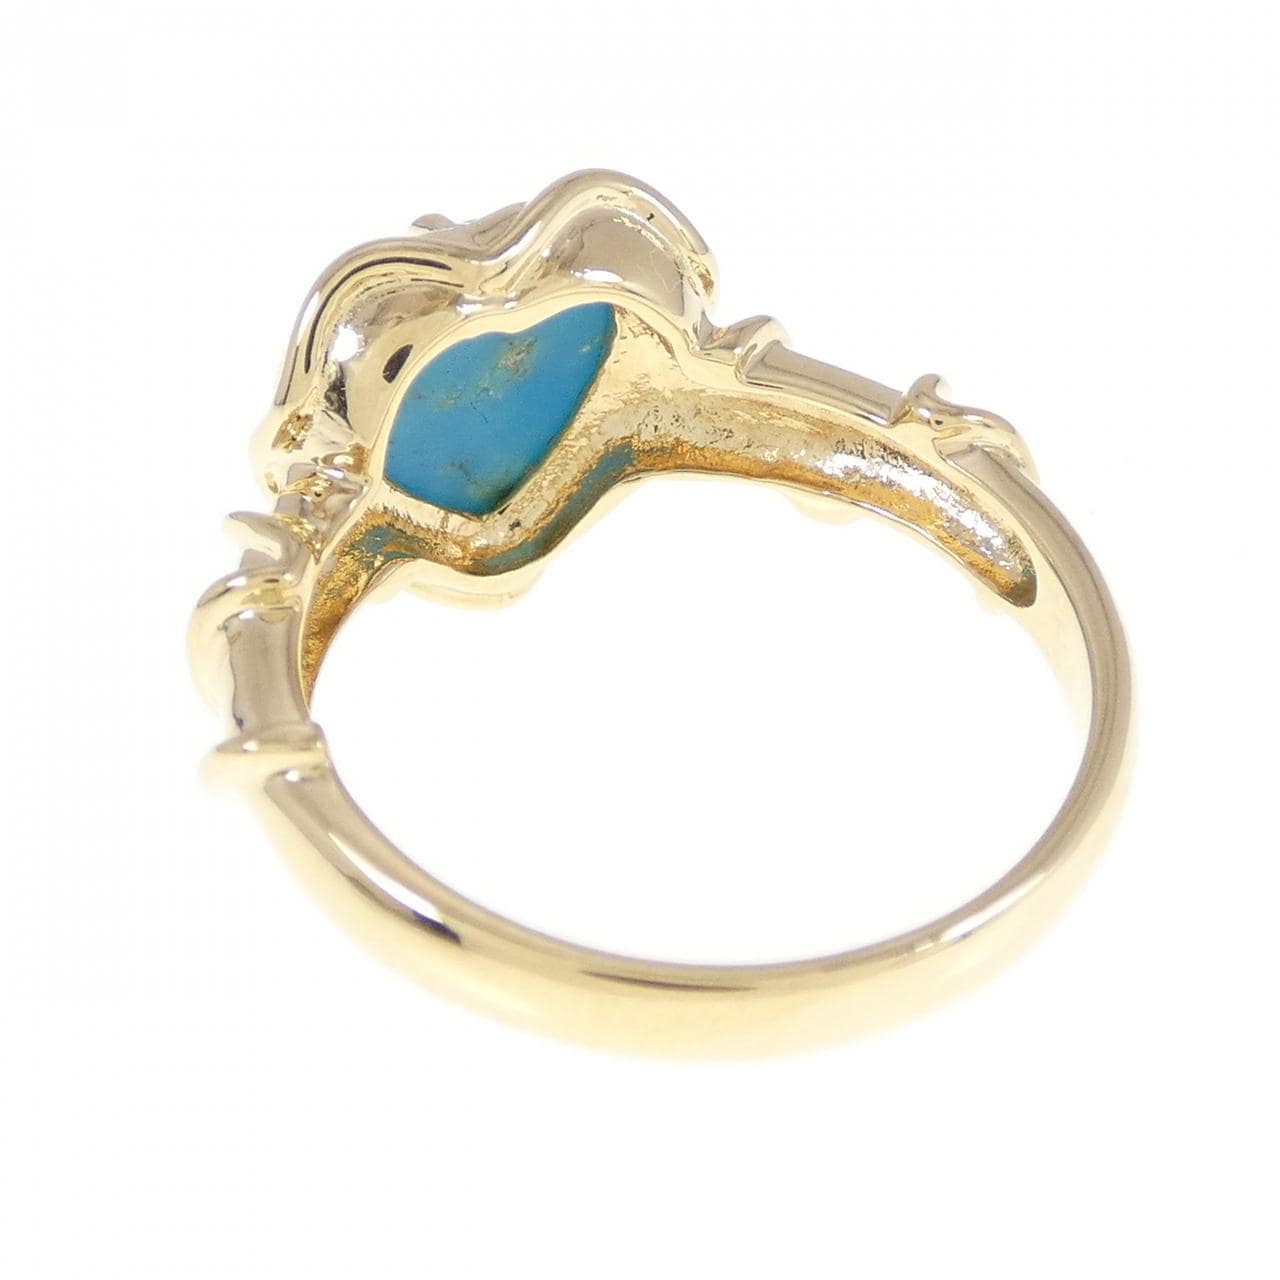 K18YG heart turquoise ring